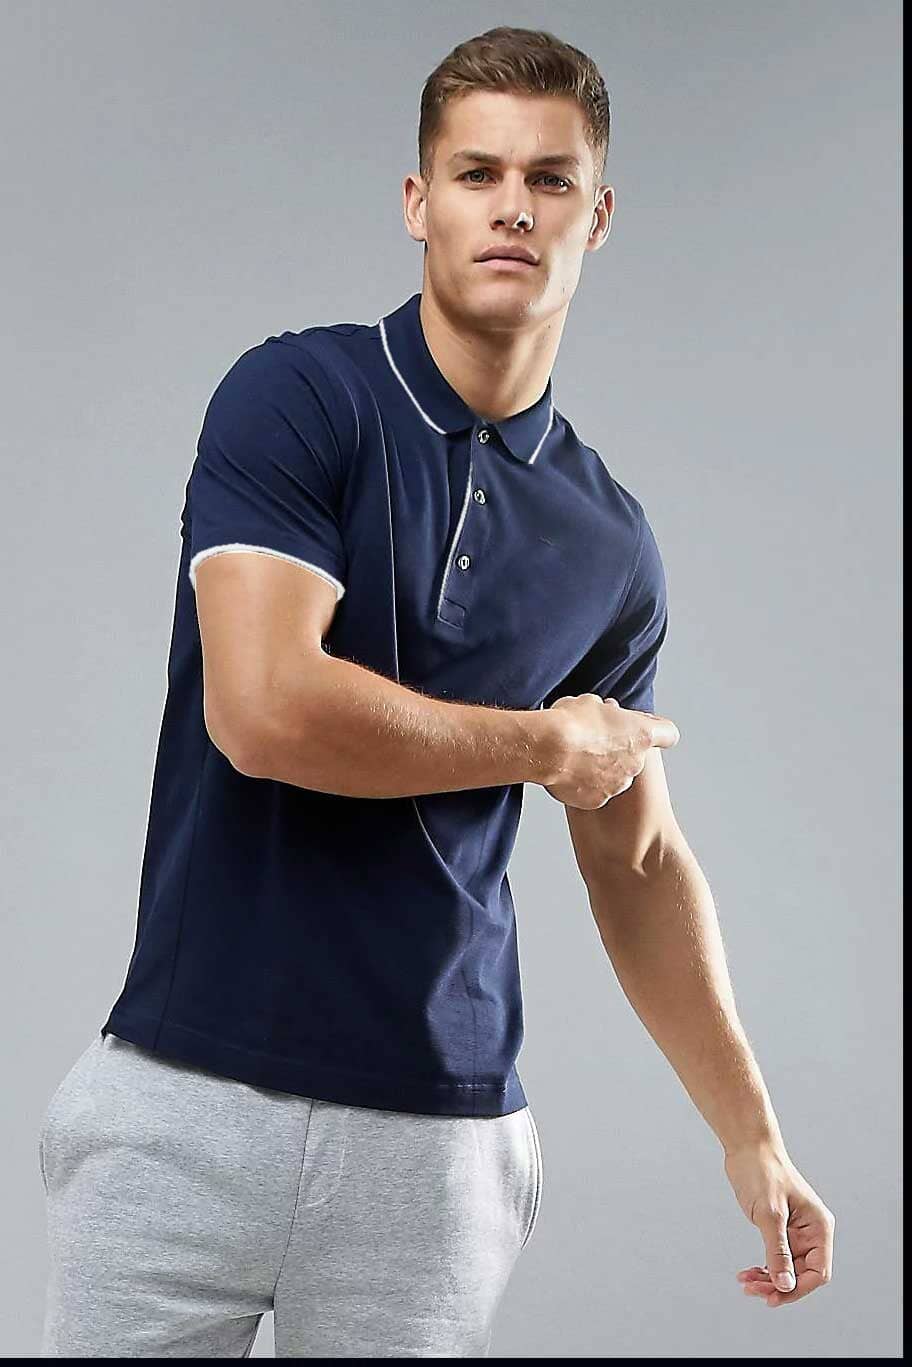 SG Men's Short Sleeve Tipped Collar Minor Fault Polo Shirt Men's Polo Shirt Image Navy XL 